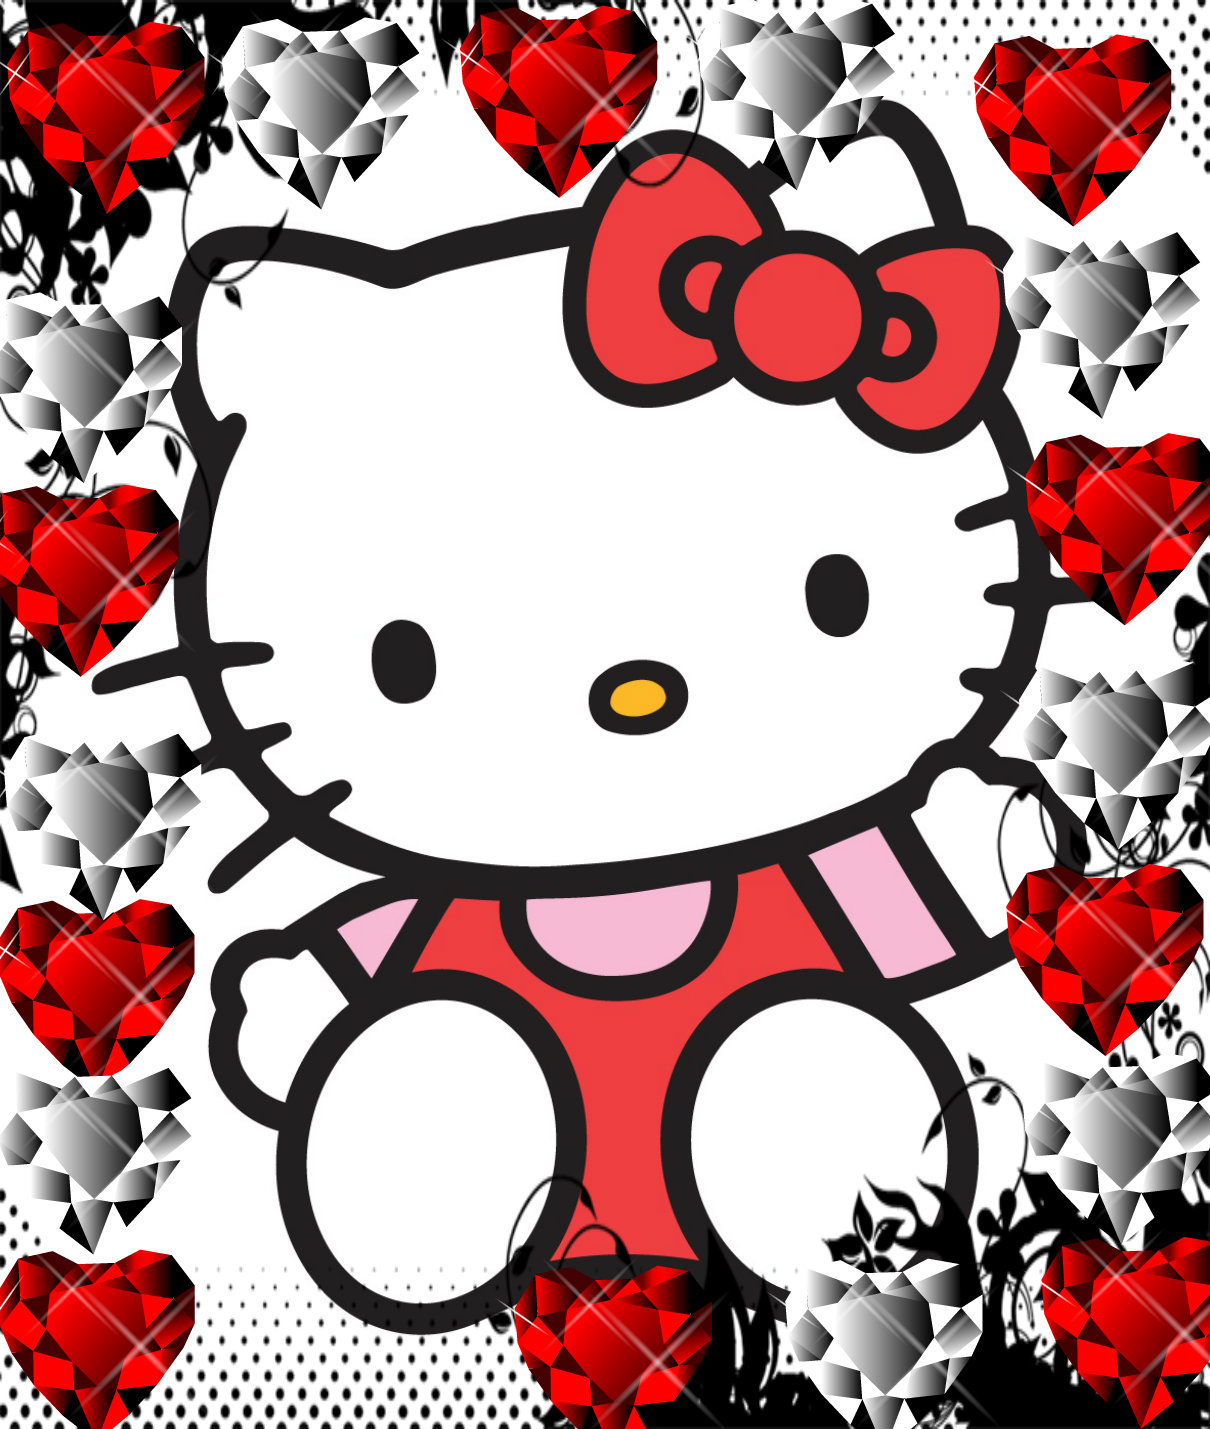 Gambar Doodle Hello Kitty Populer Dan